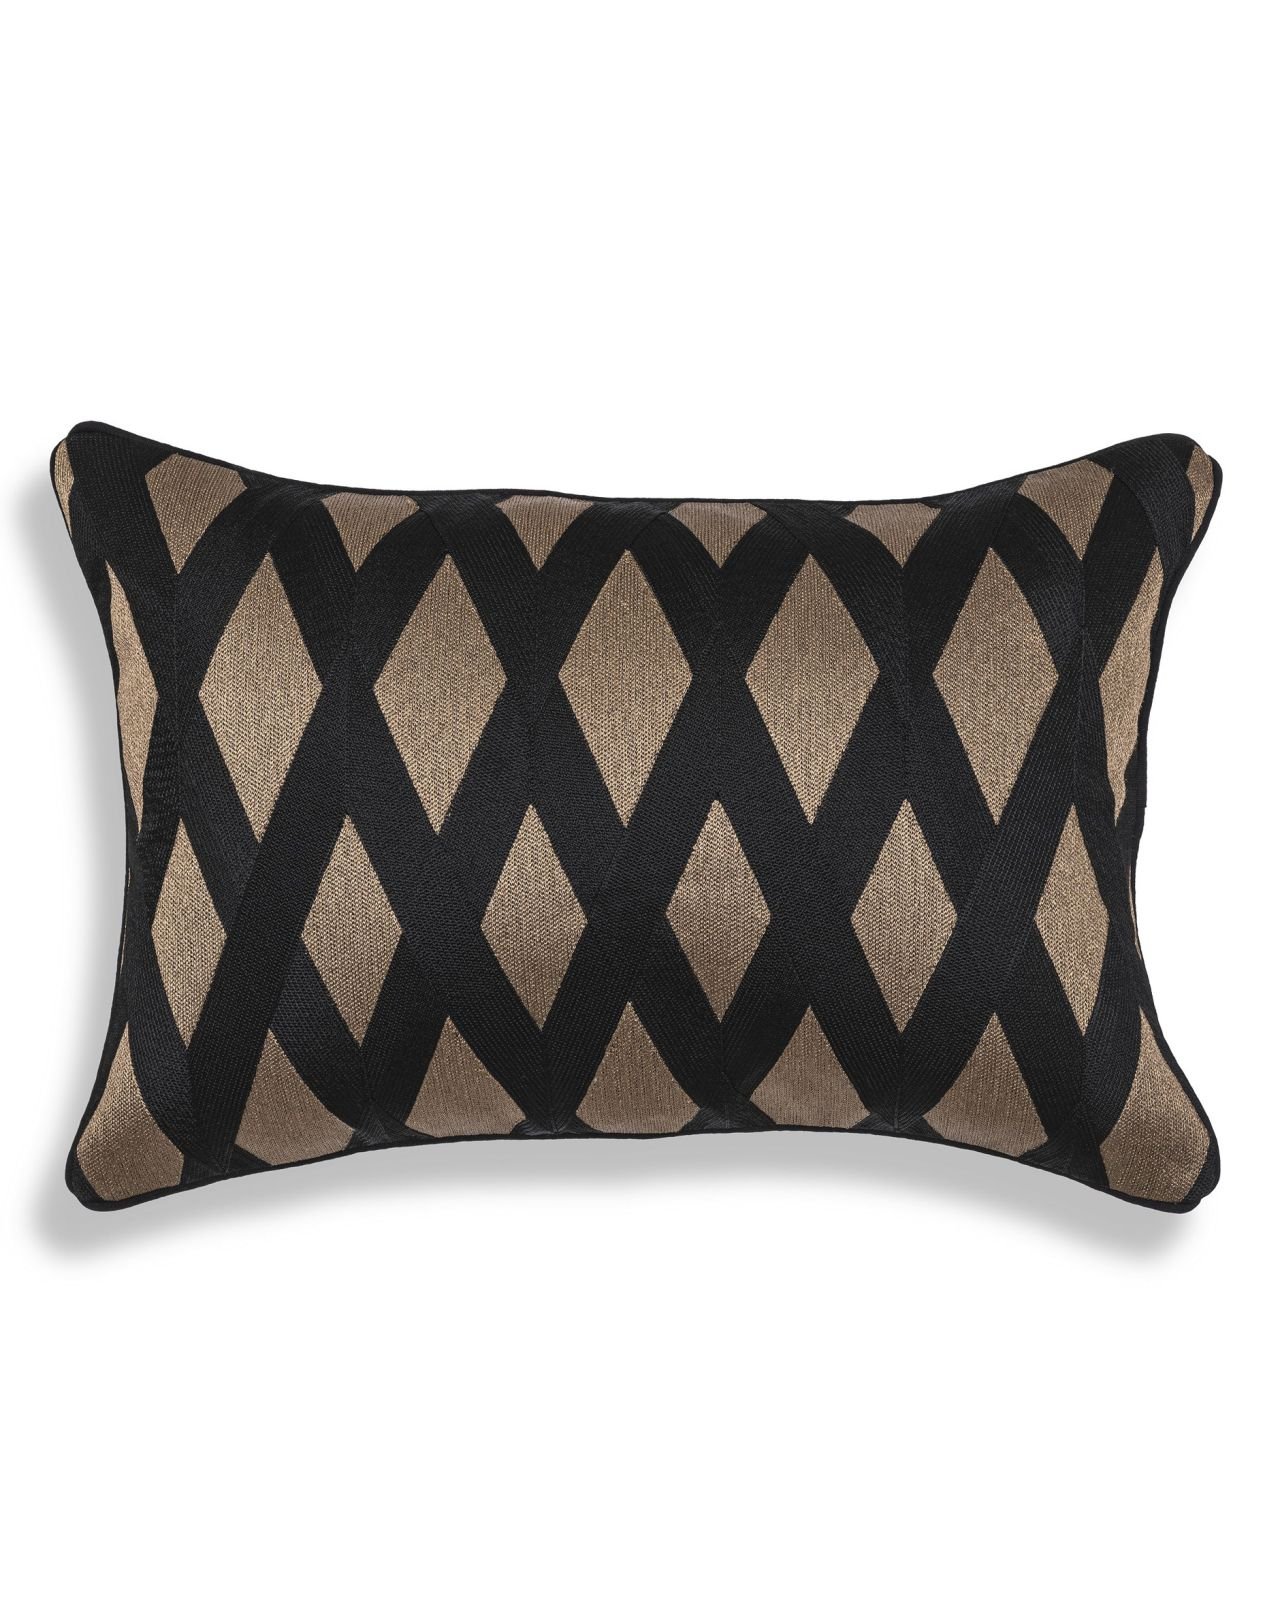 Splender cushion rectangular black/gold